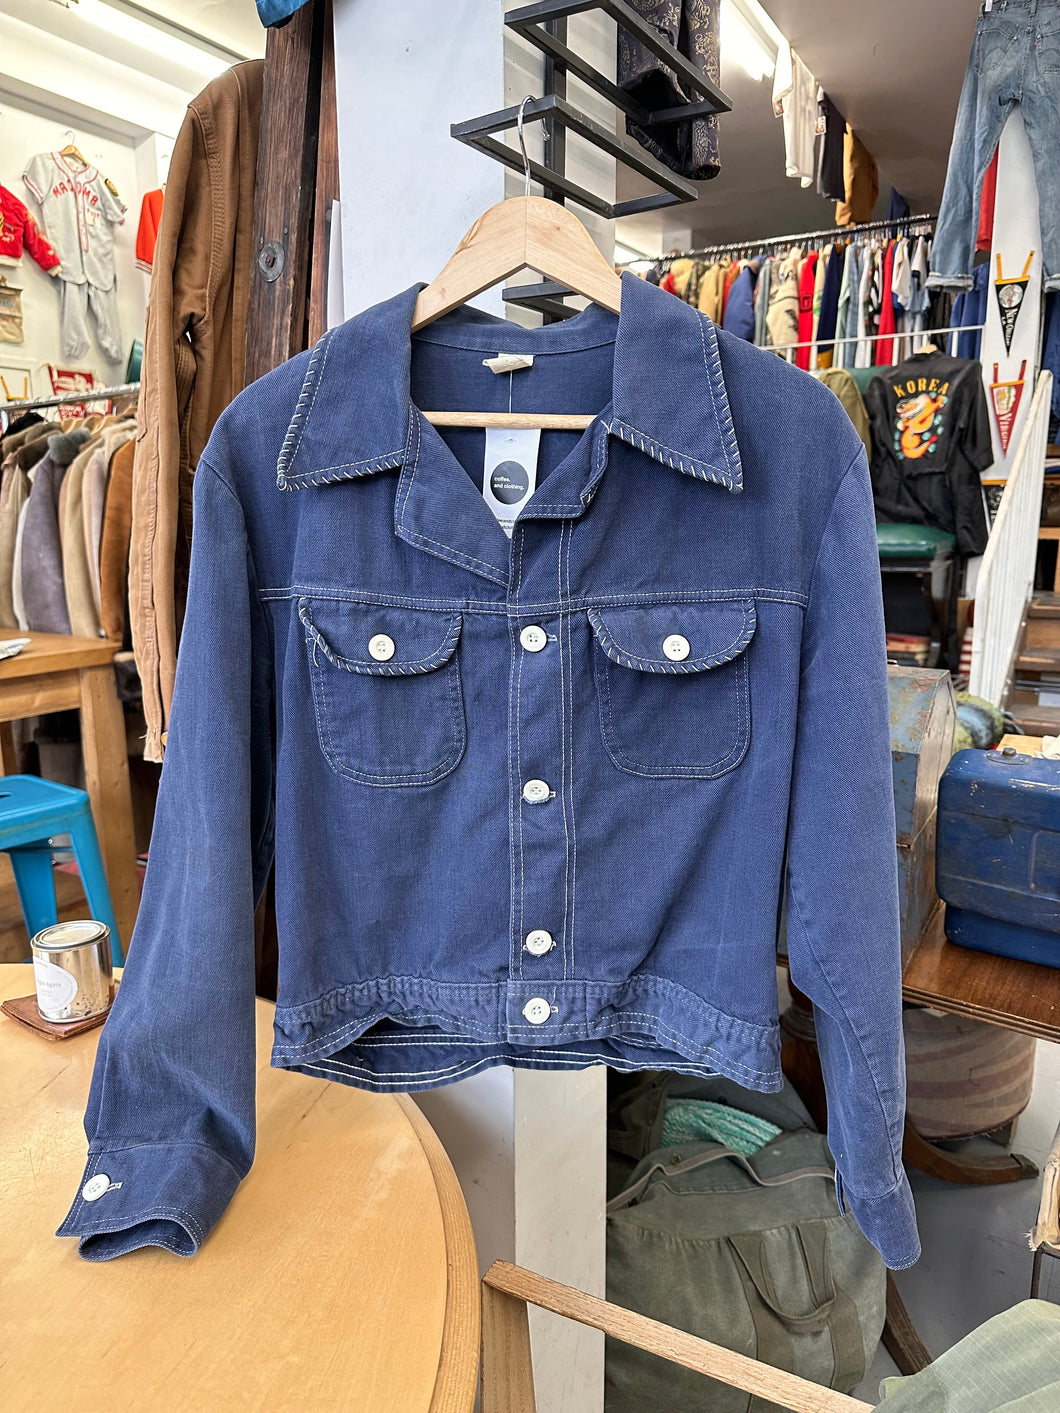 1960s/'70s Blue Cotton Stitched Jacket